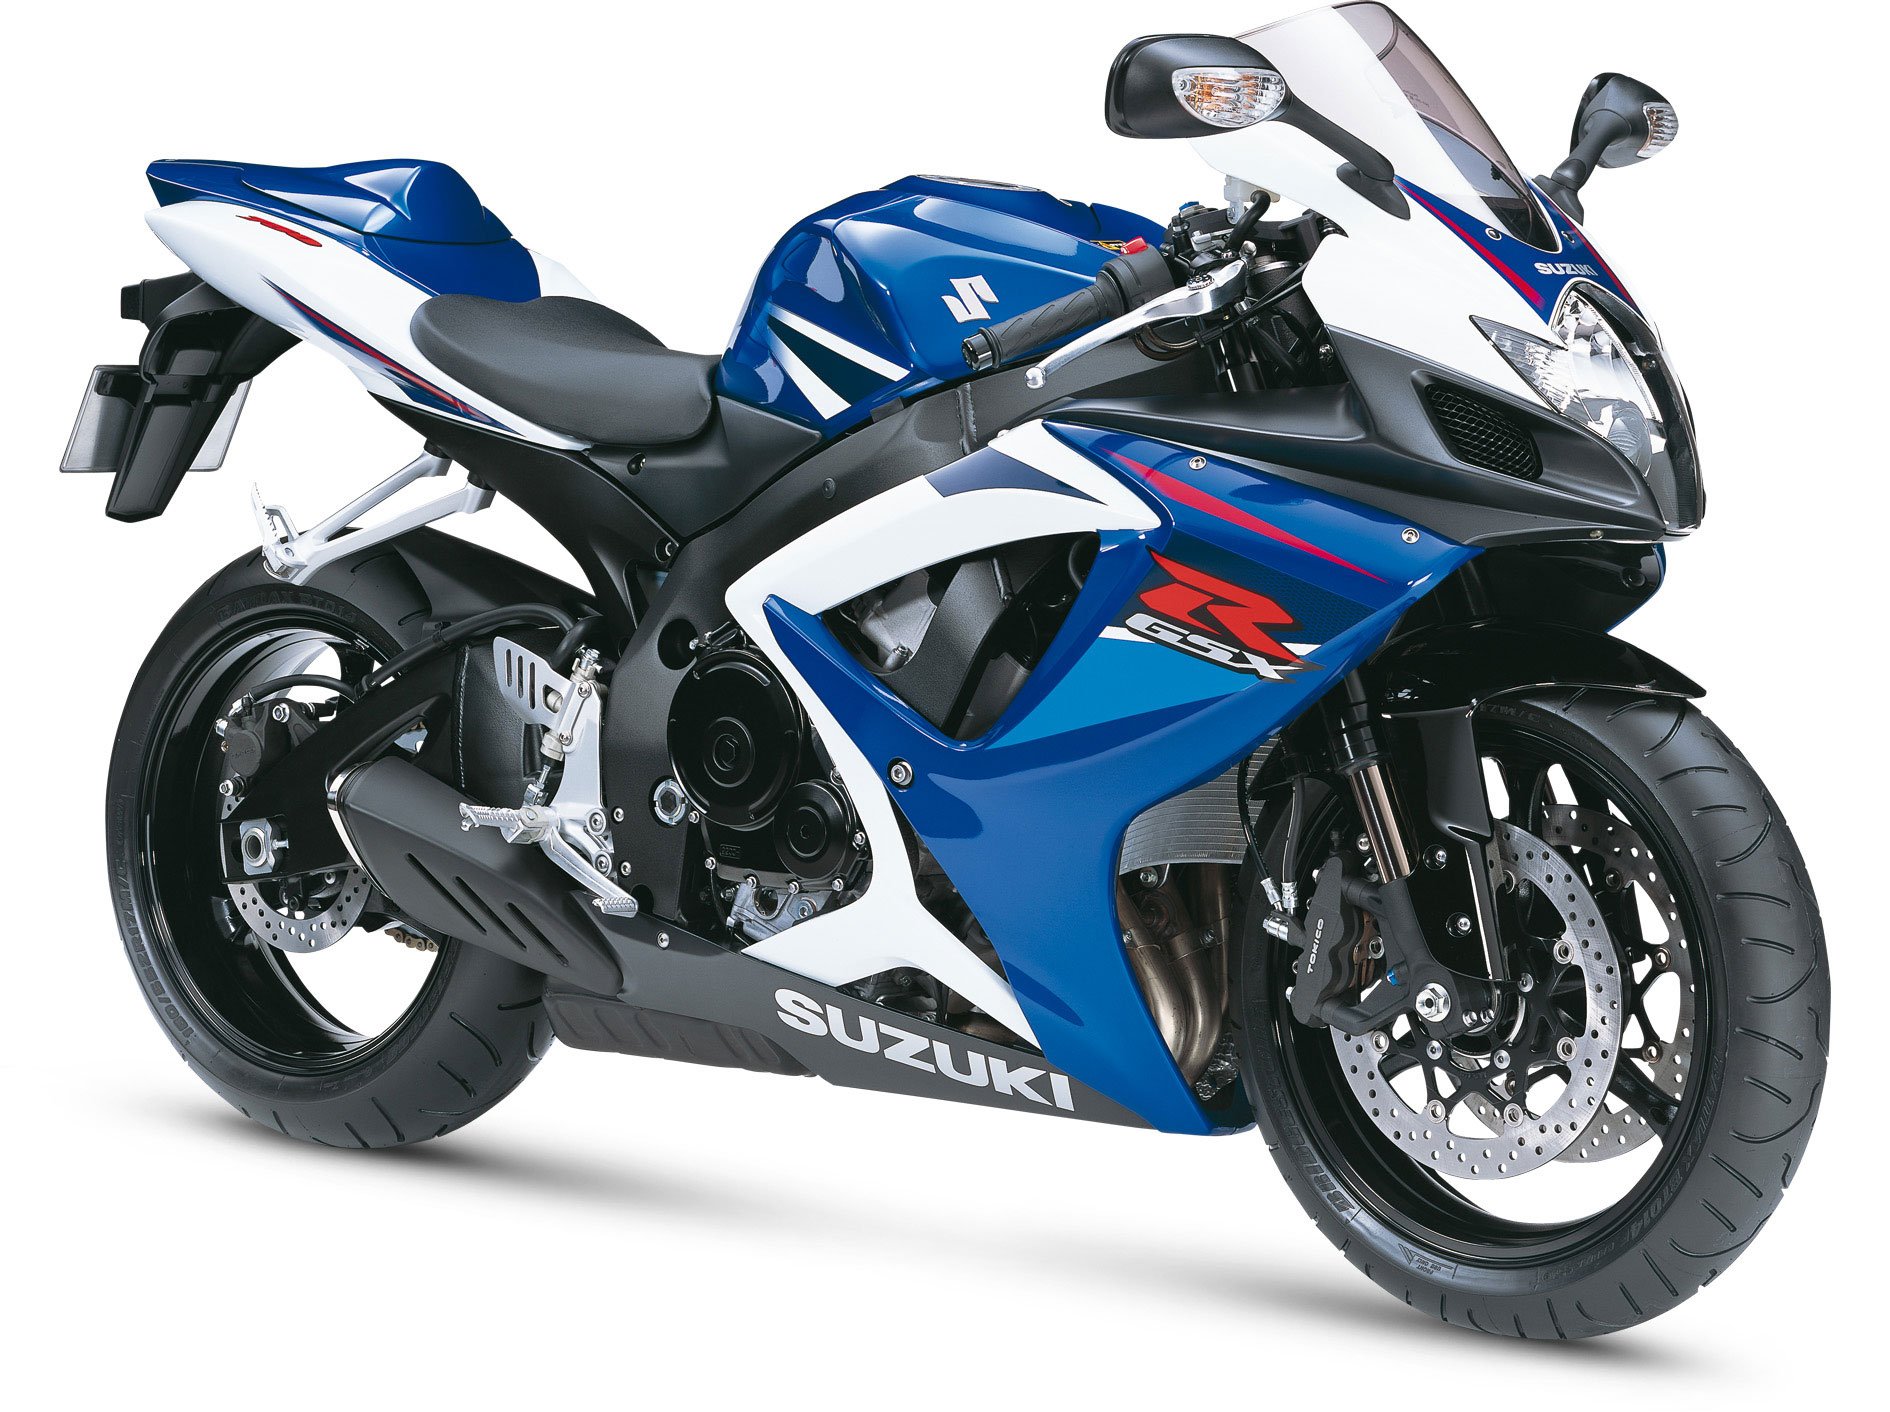 2007, Suzuki, Gsx r750, Motorcycles Wallpaper